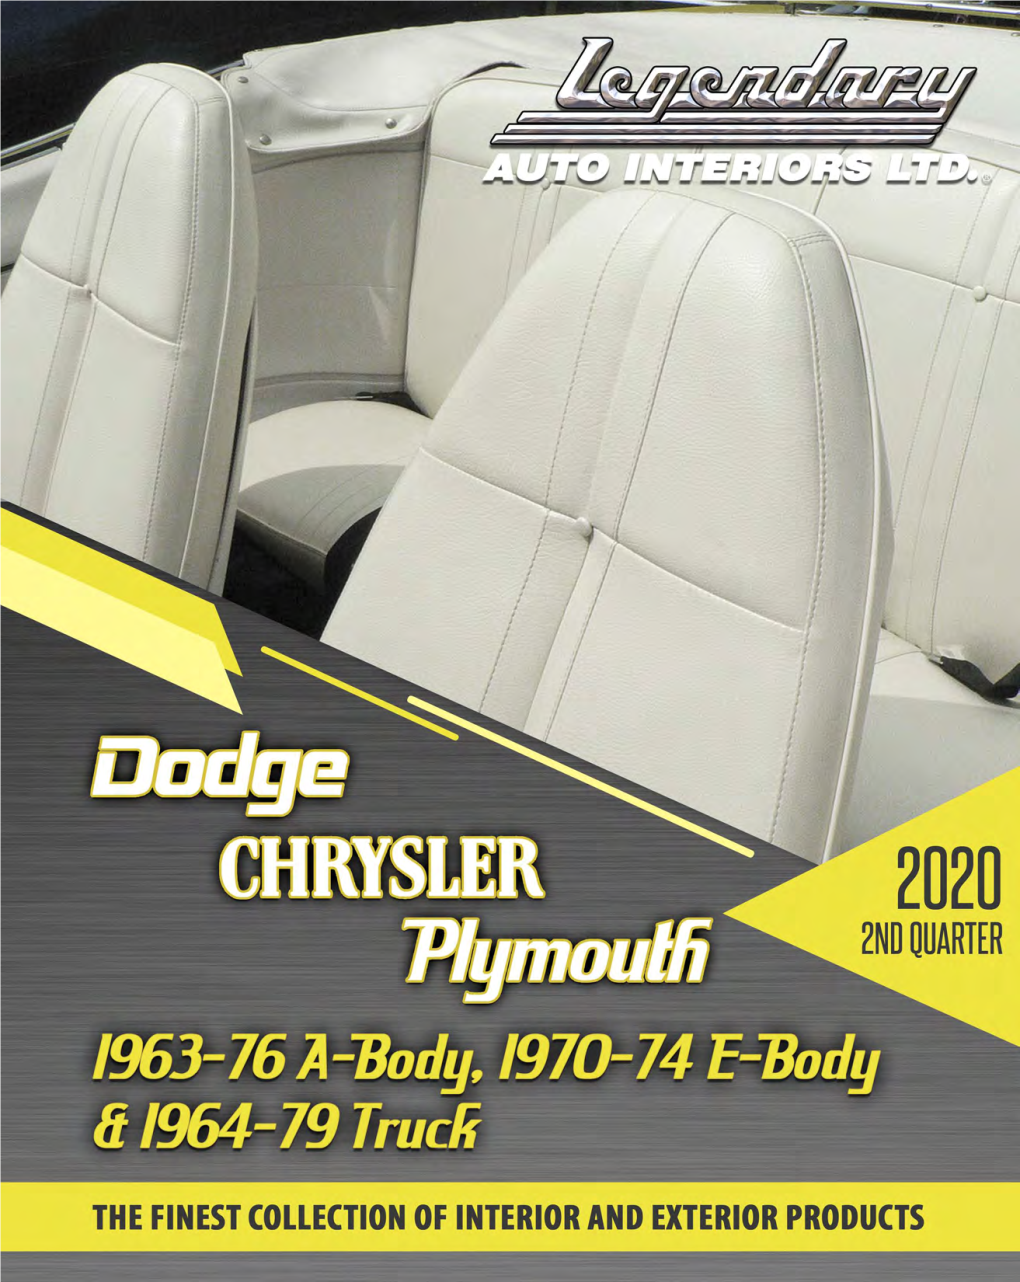 Chryslercatalogaande-5.Pdf